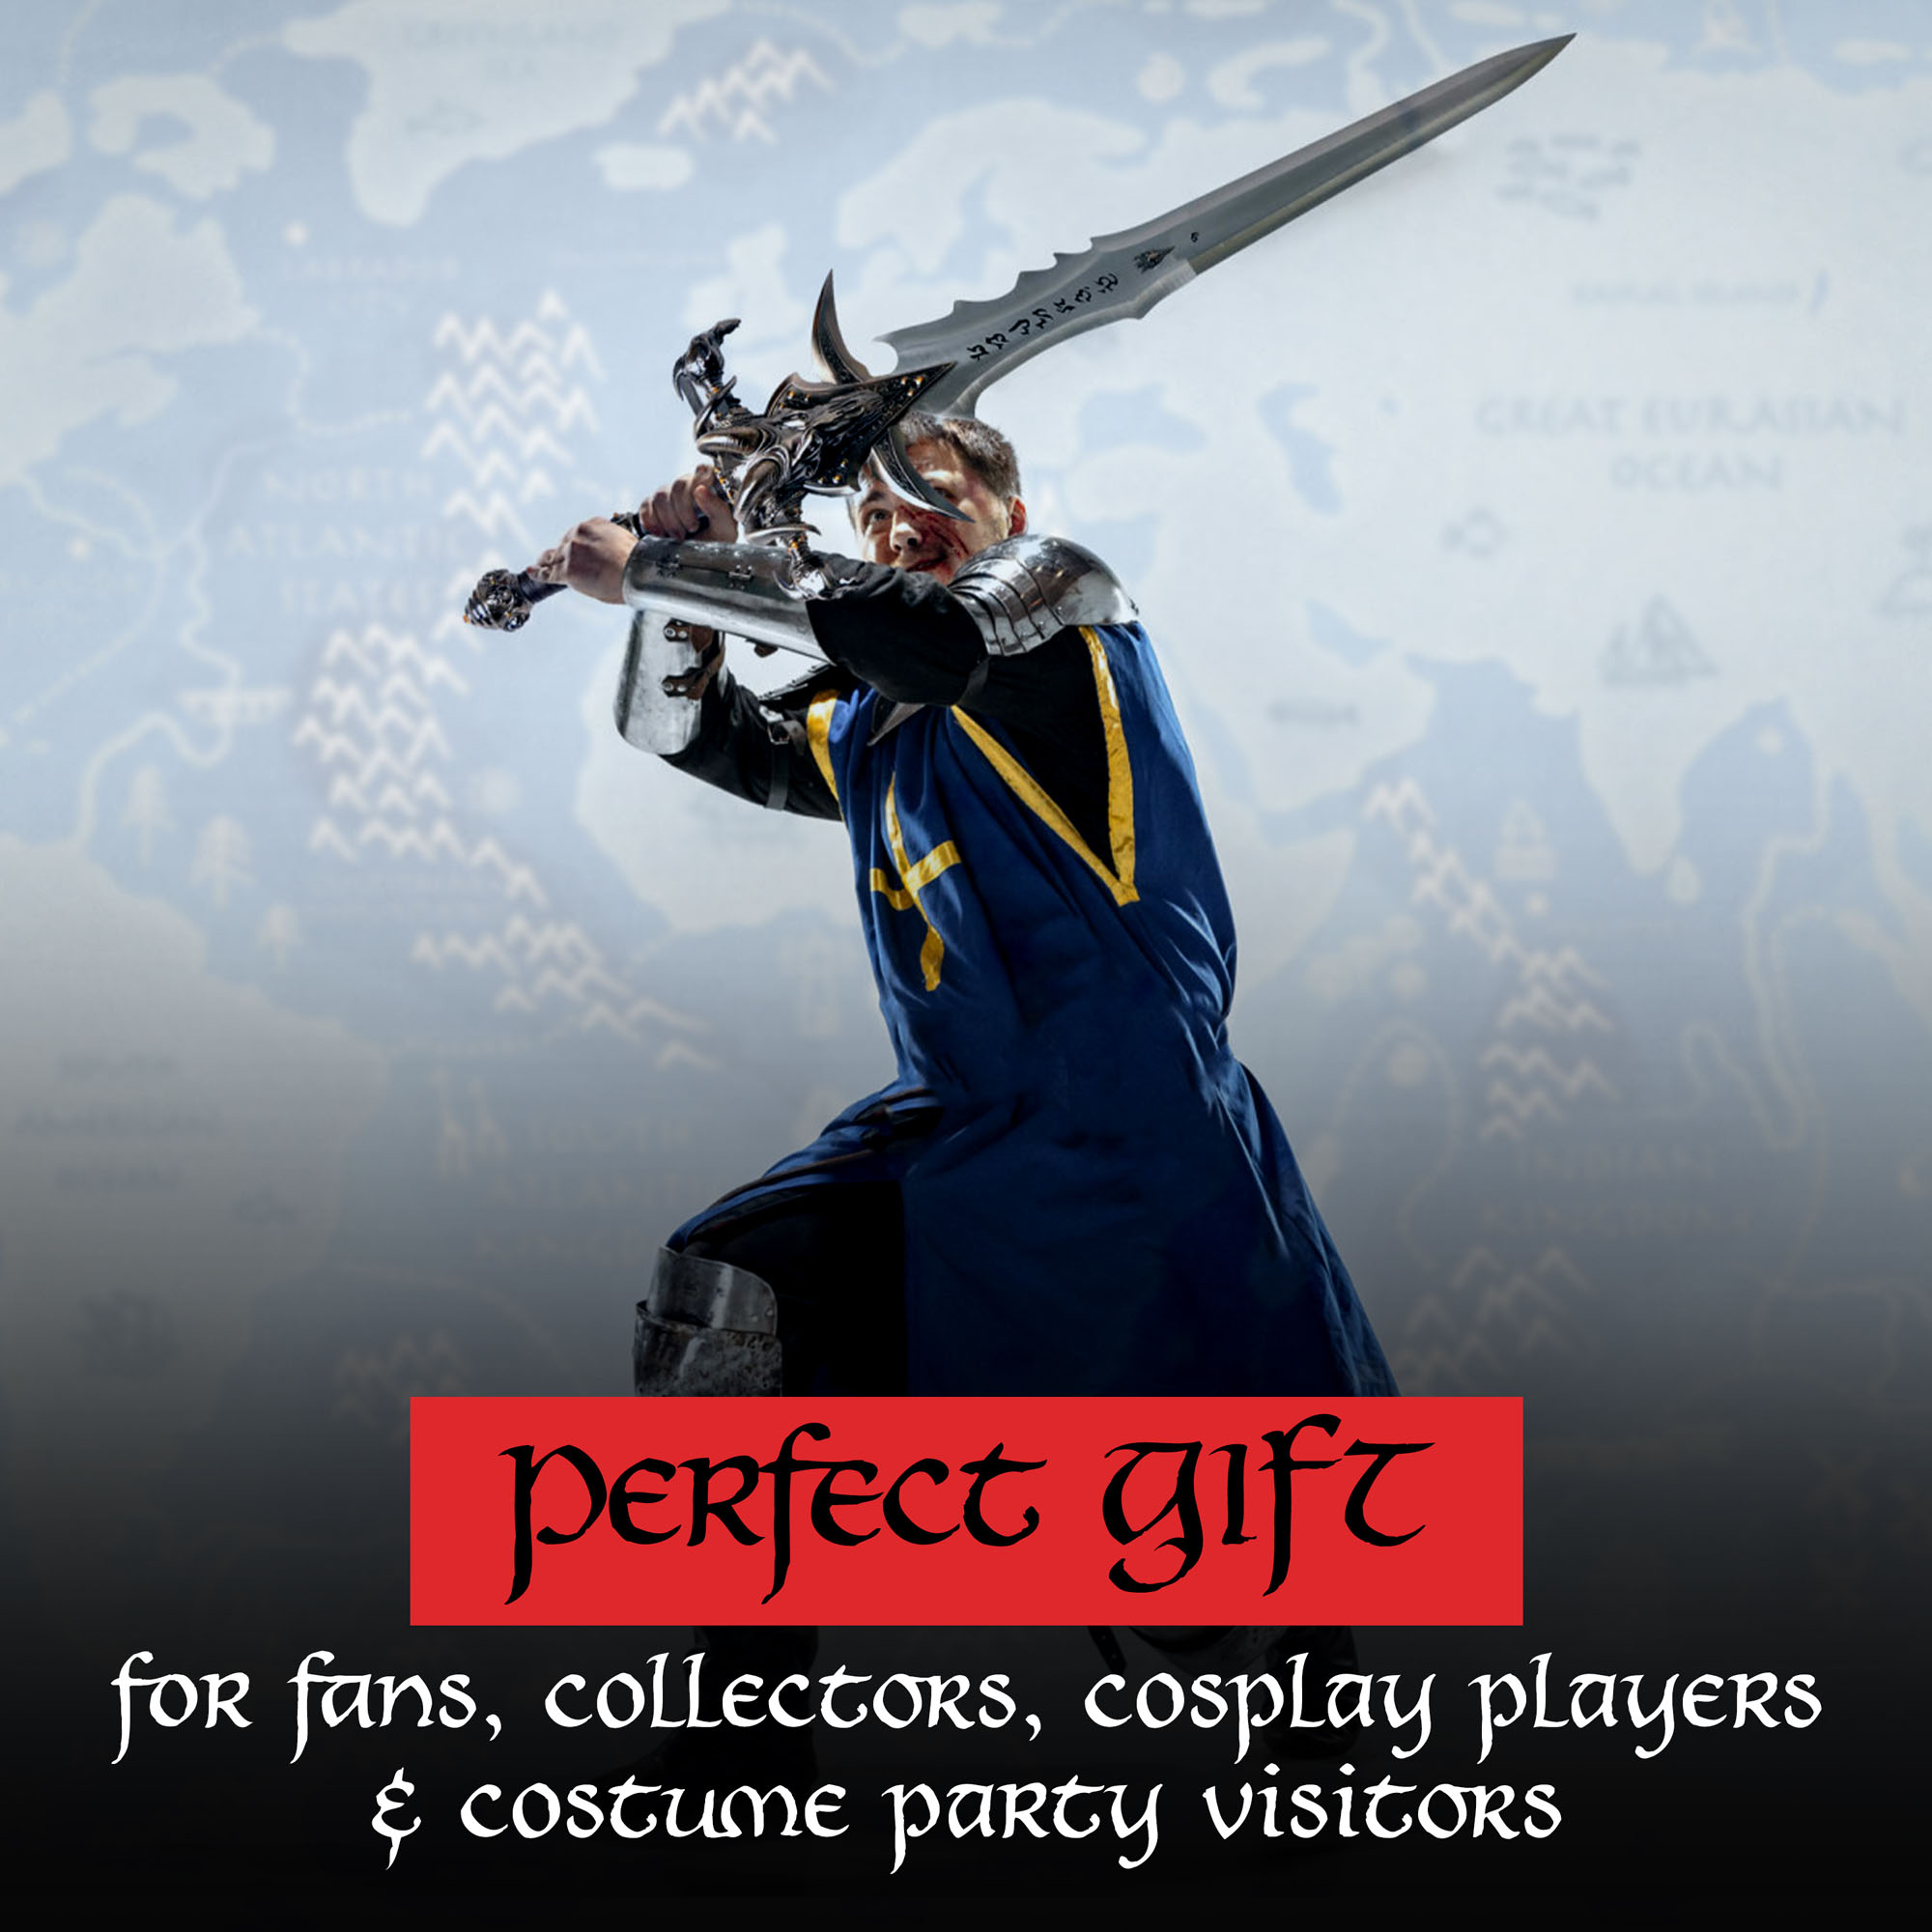 Warcraft - Frostmourne Schwert - Replik mit Wanddisplay